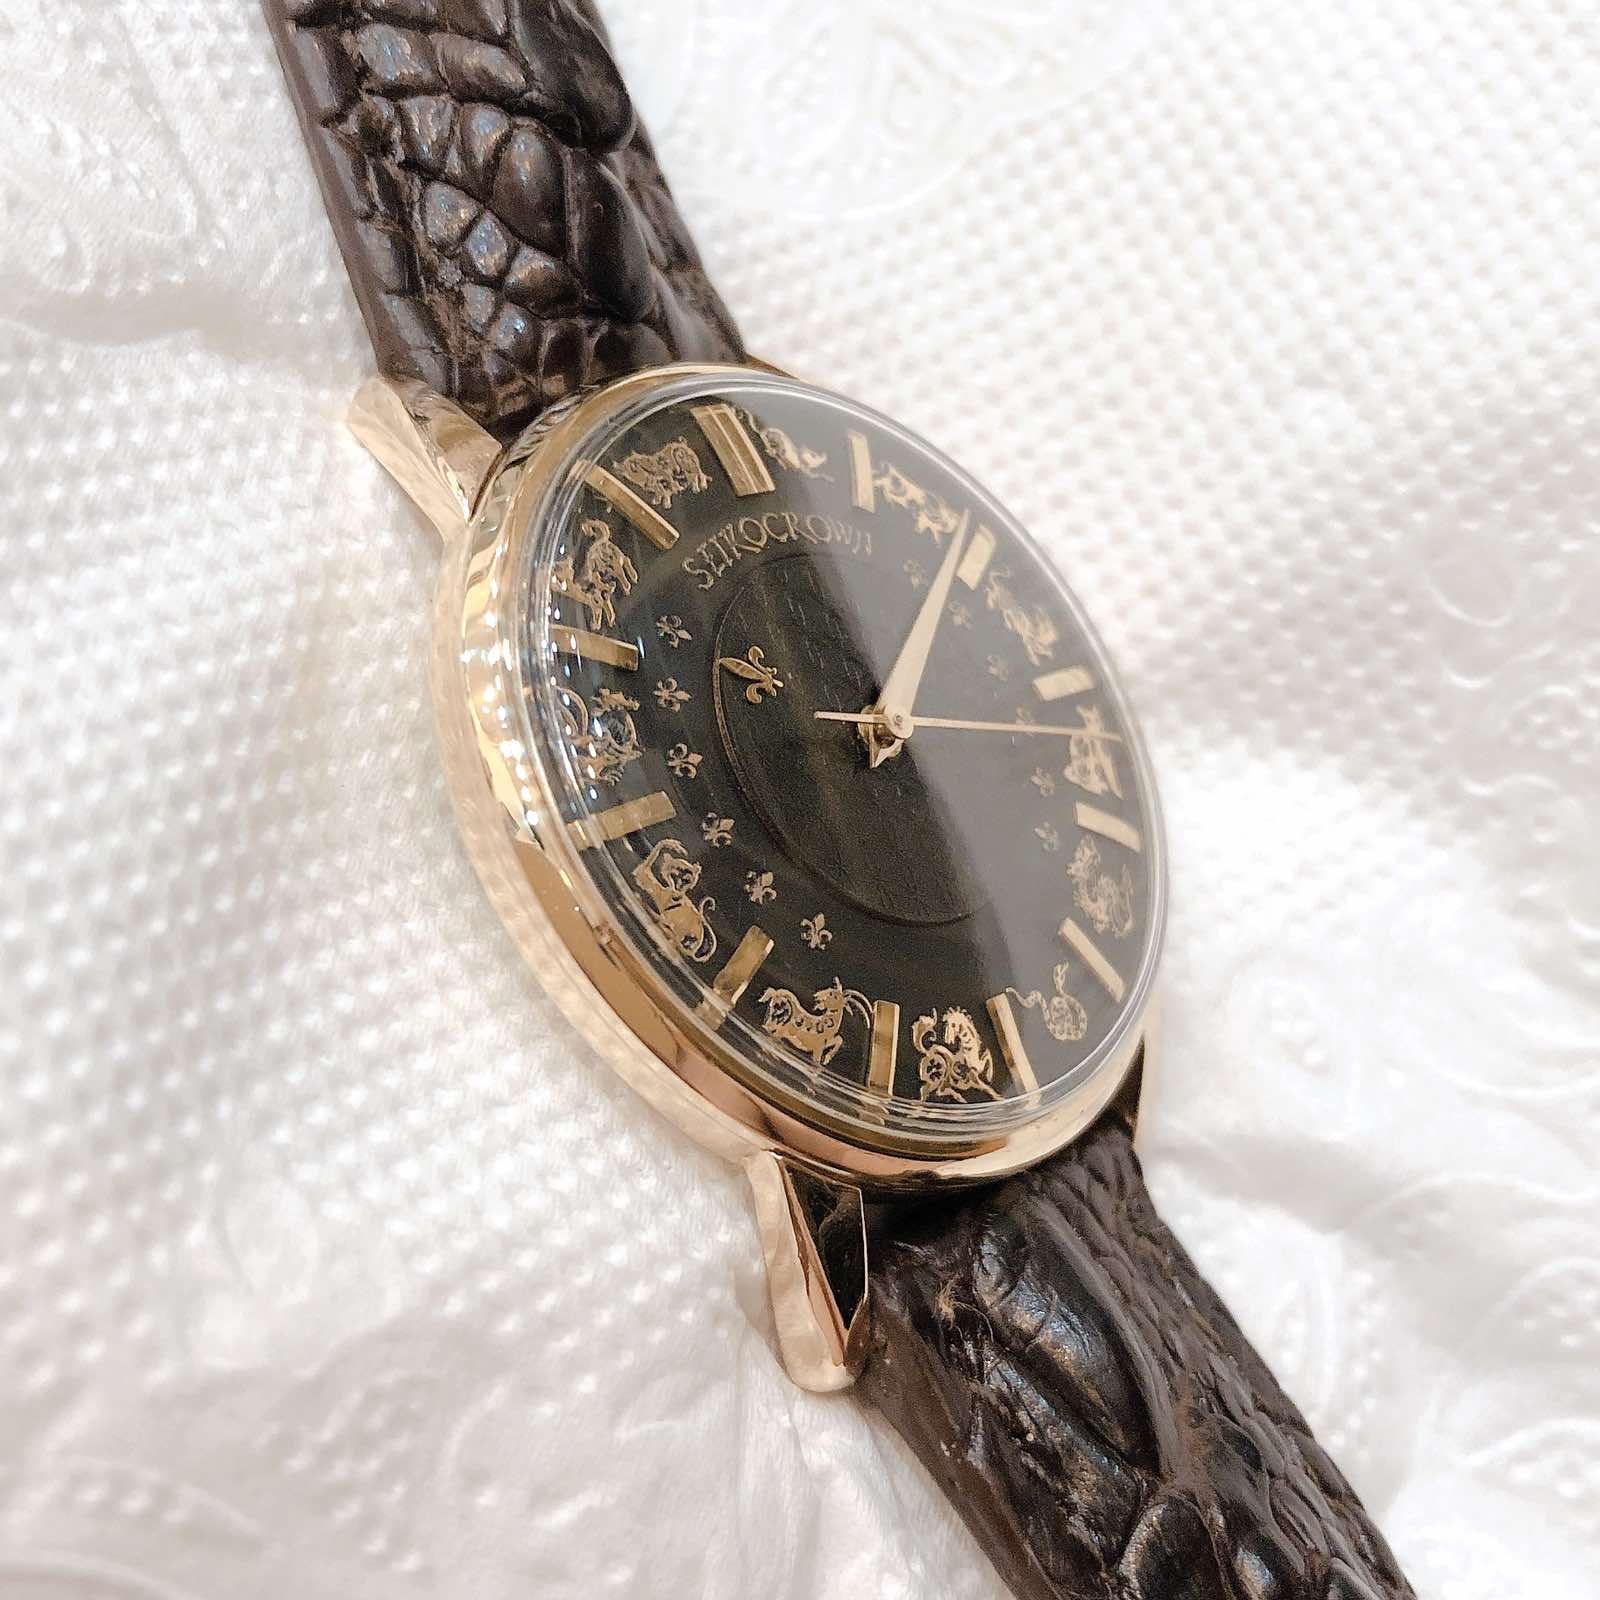 Đồng hồ cổ Seiko Crown kim đĩa bản đặc biệt 12 con giáp chính hãng nhật bản